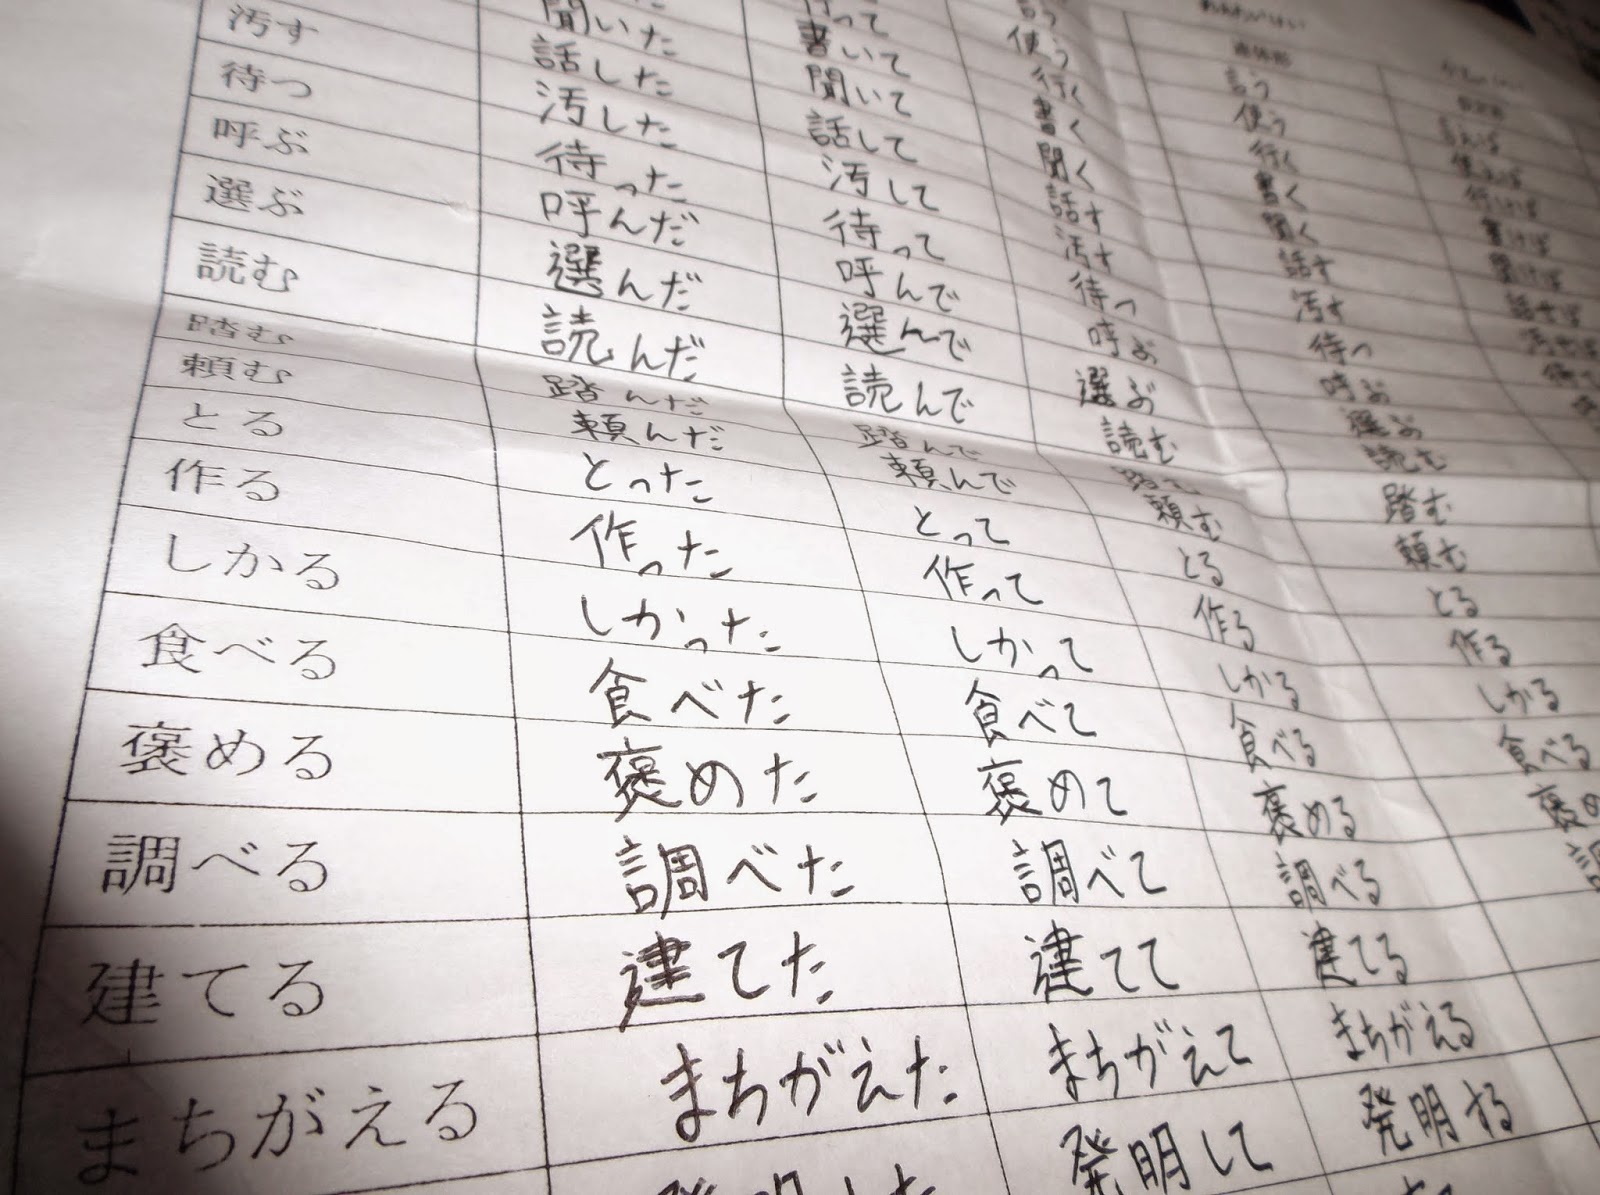 Belajar Tentang Jepang : Konjugasi Verba Bahasa Jepang